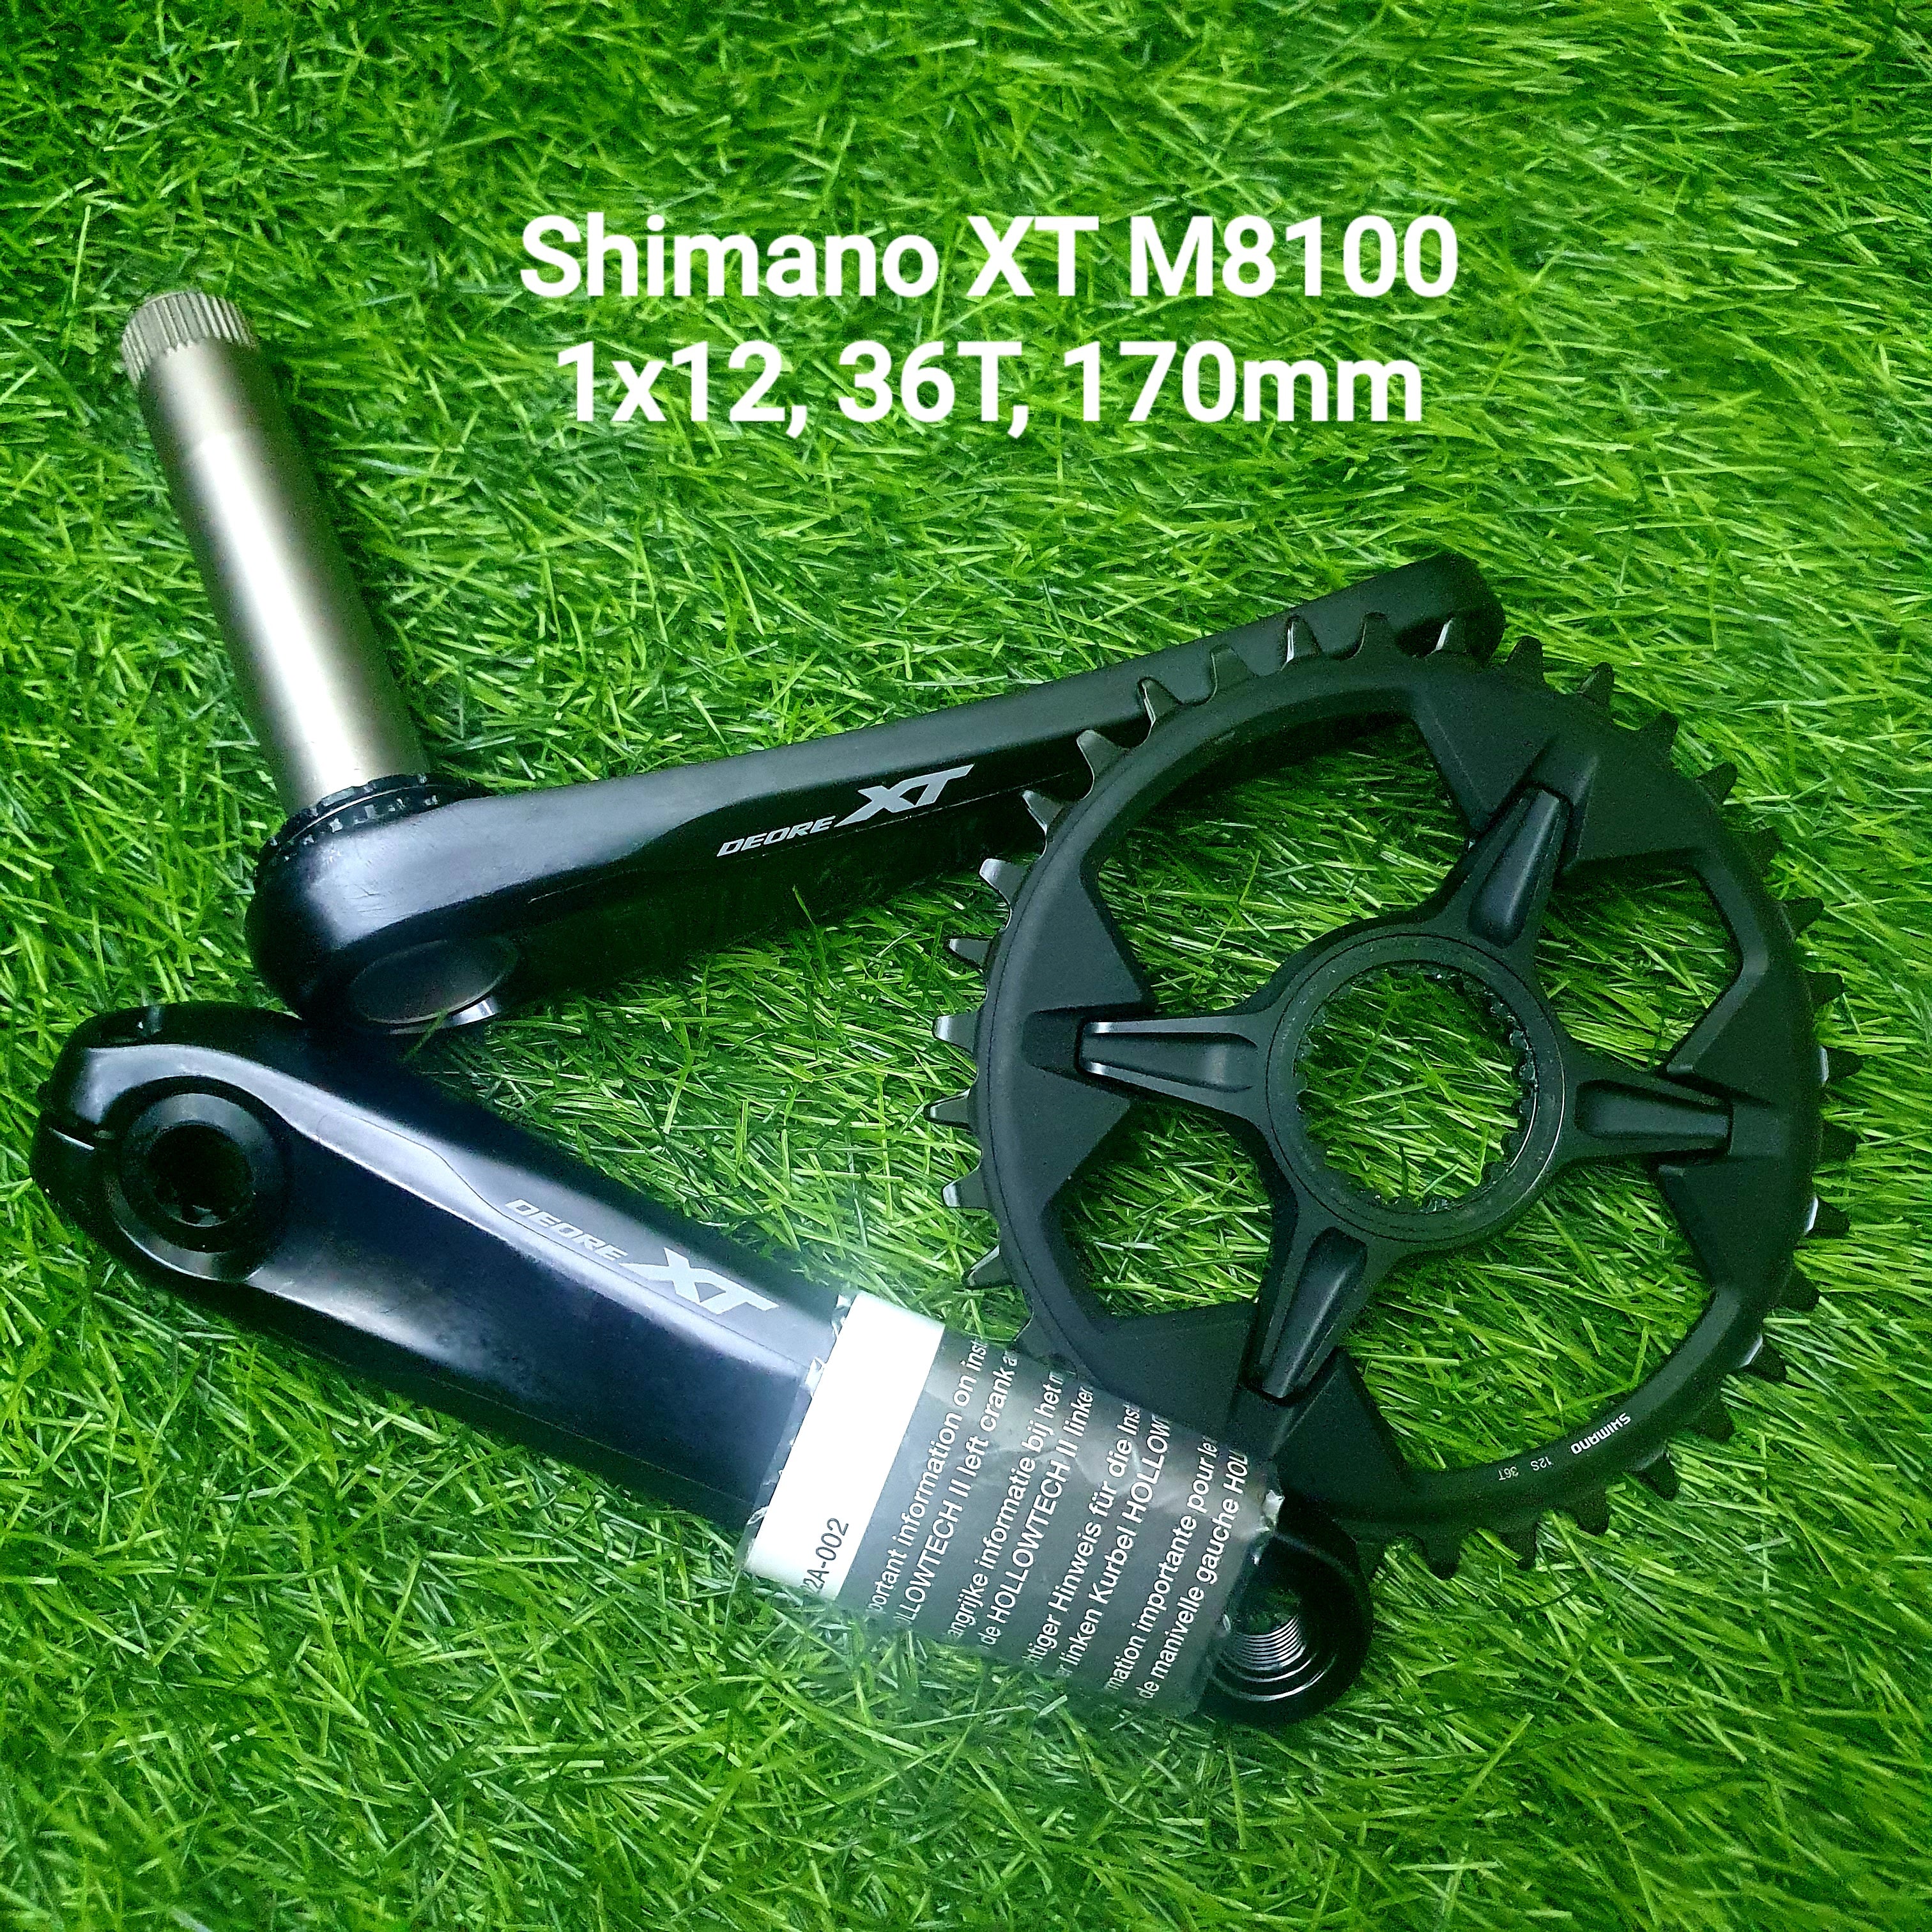 Shimano XT M8100 Crankset